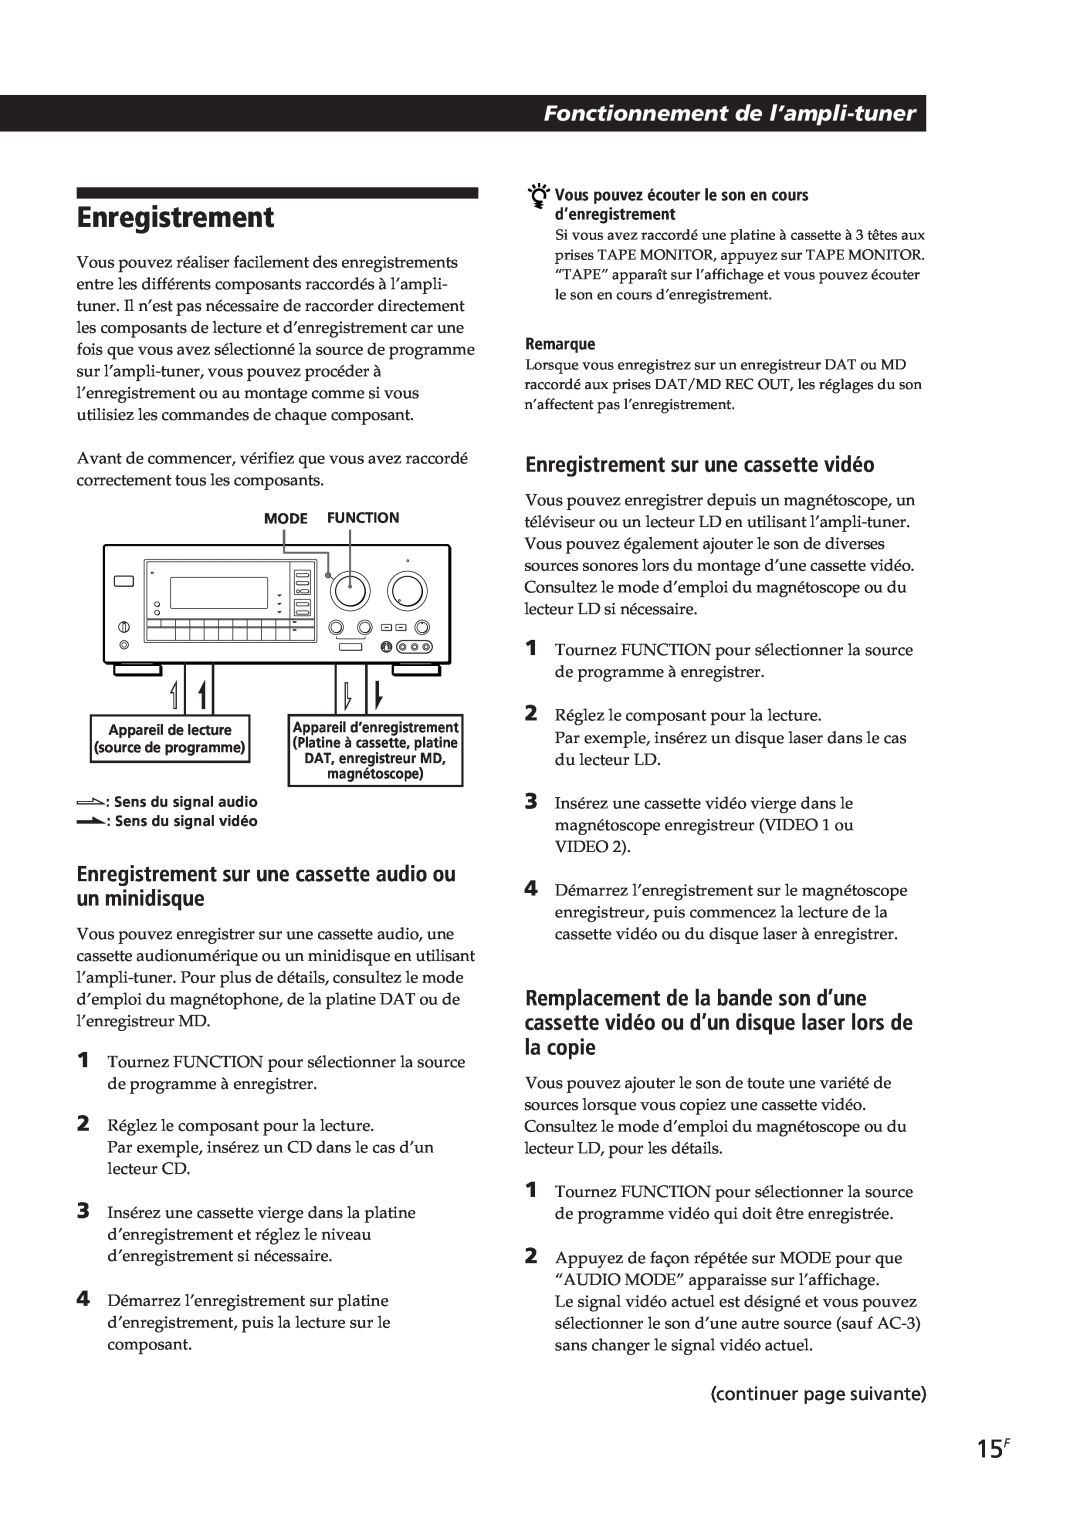 Sony STR-GA8ES manual Enregistrement sur une cassette vidéo, Fonctionnement de l’ampli-tuner, continuer page suivante 